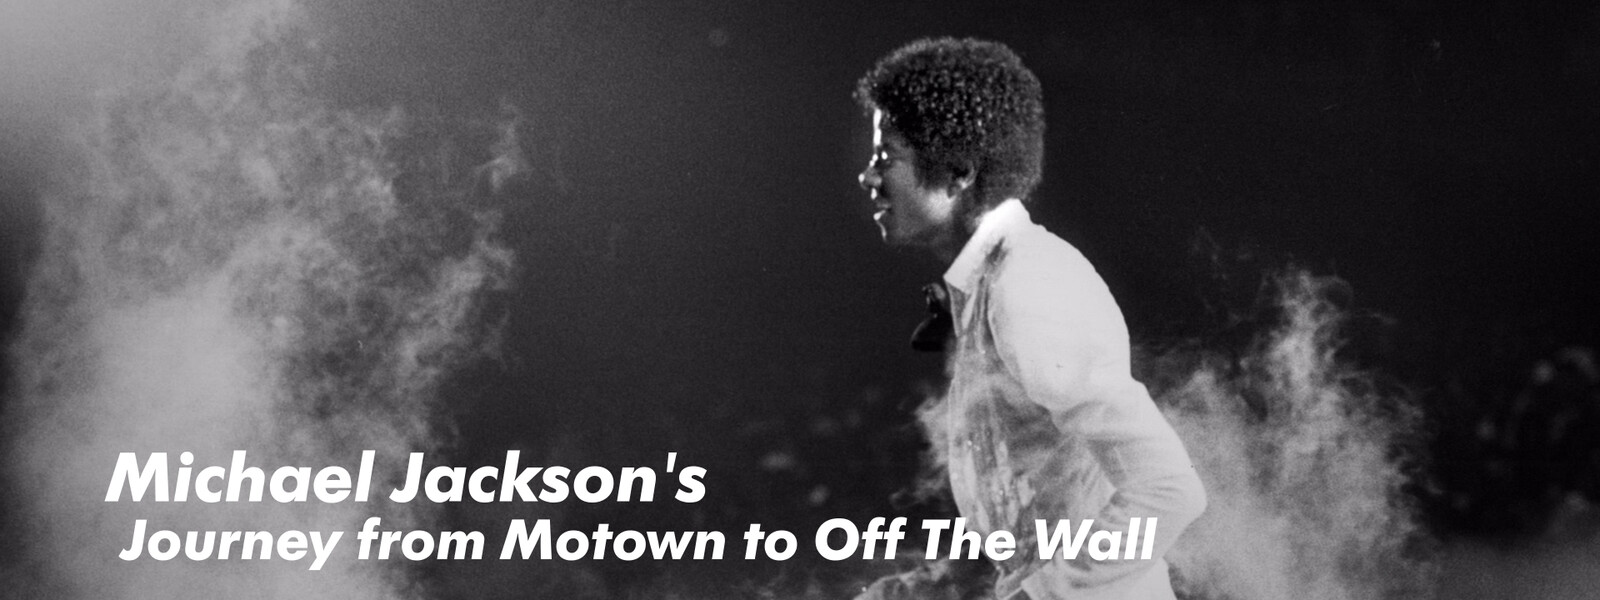 マイケル･ジャクソン：映画「Michael Jackson's Journey from Motown to Off The Wall」の動画 - マイケル・ジャクソン キング・オブ・ポップの素顔